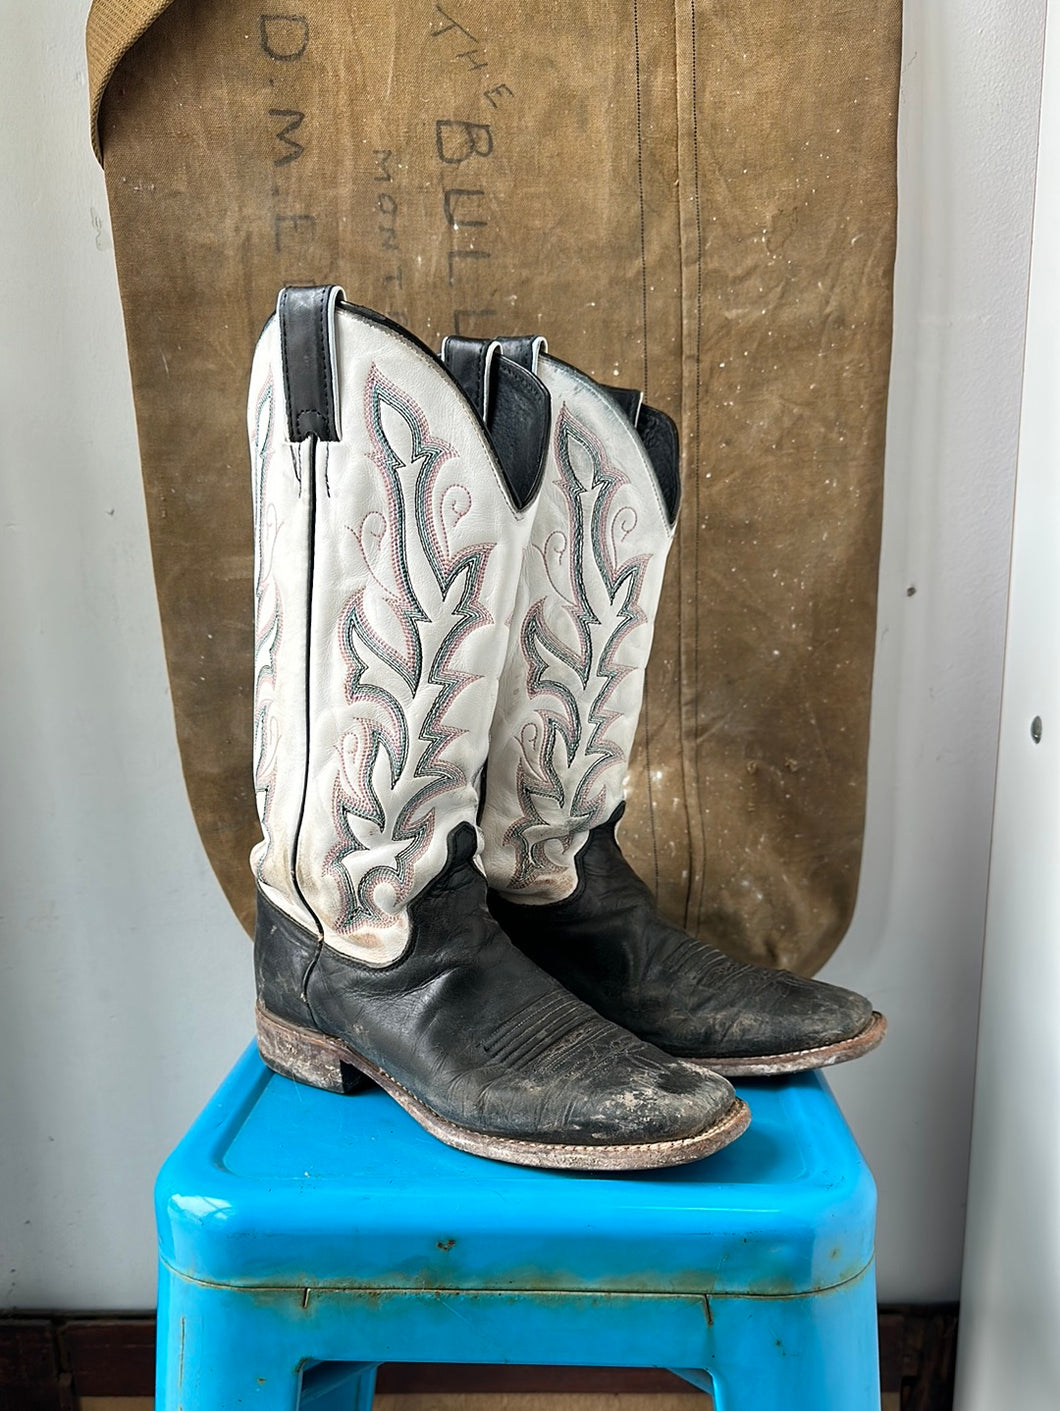 Justin Cowboy Boots - Black/White - Size 8 M 9.5 W